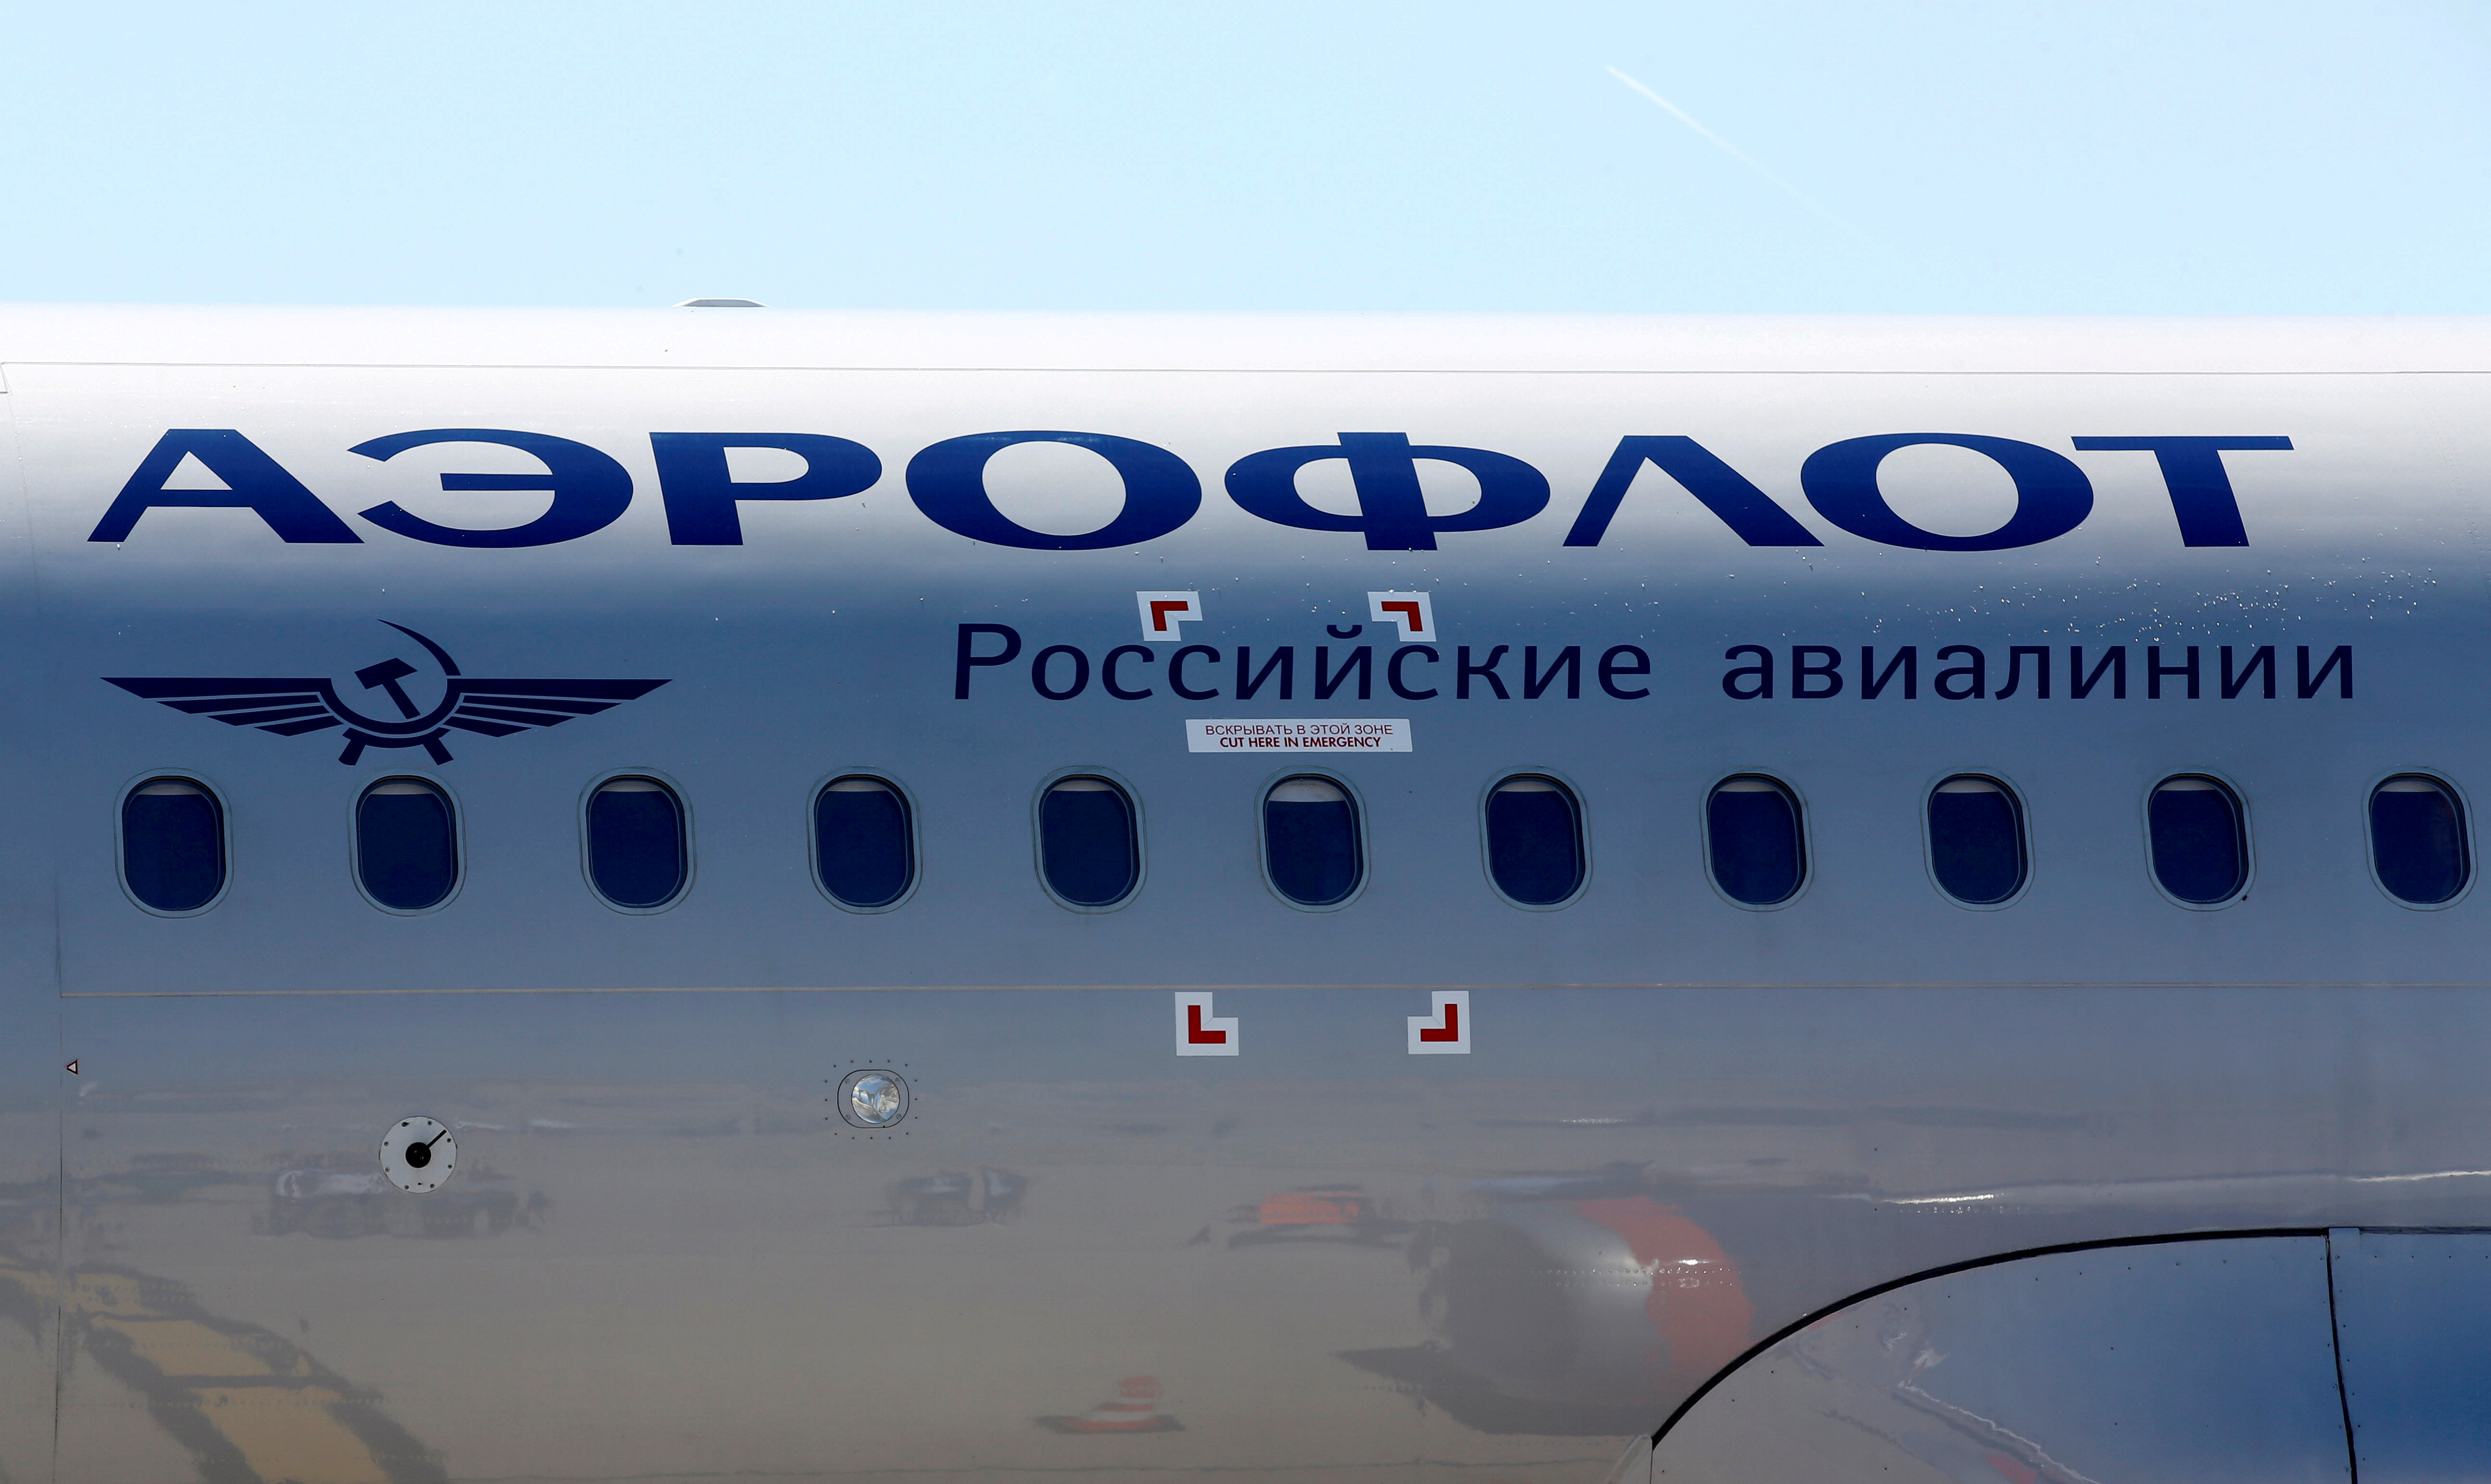 Les sanctions occidentales pourraient être « très dangereuses » pour l'aviation russe faute de maintenance